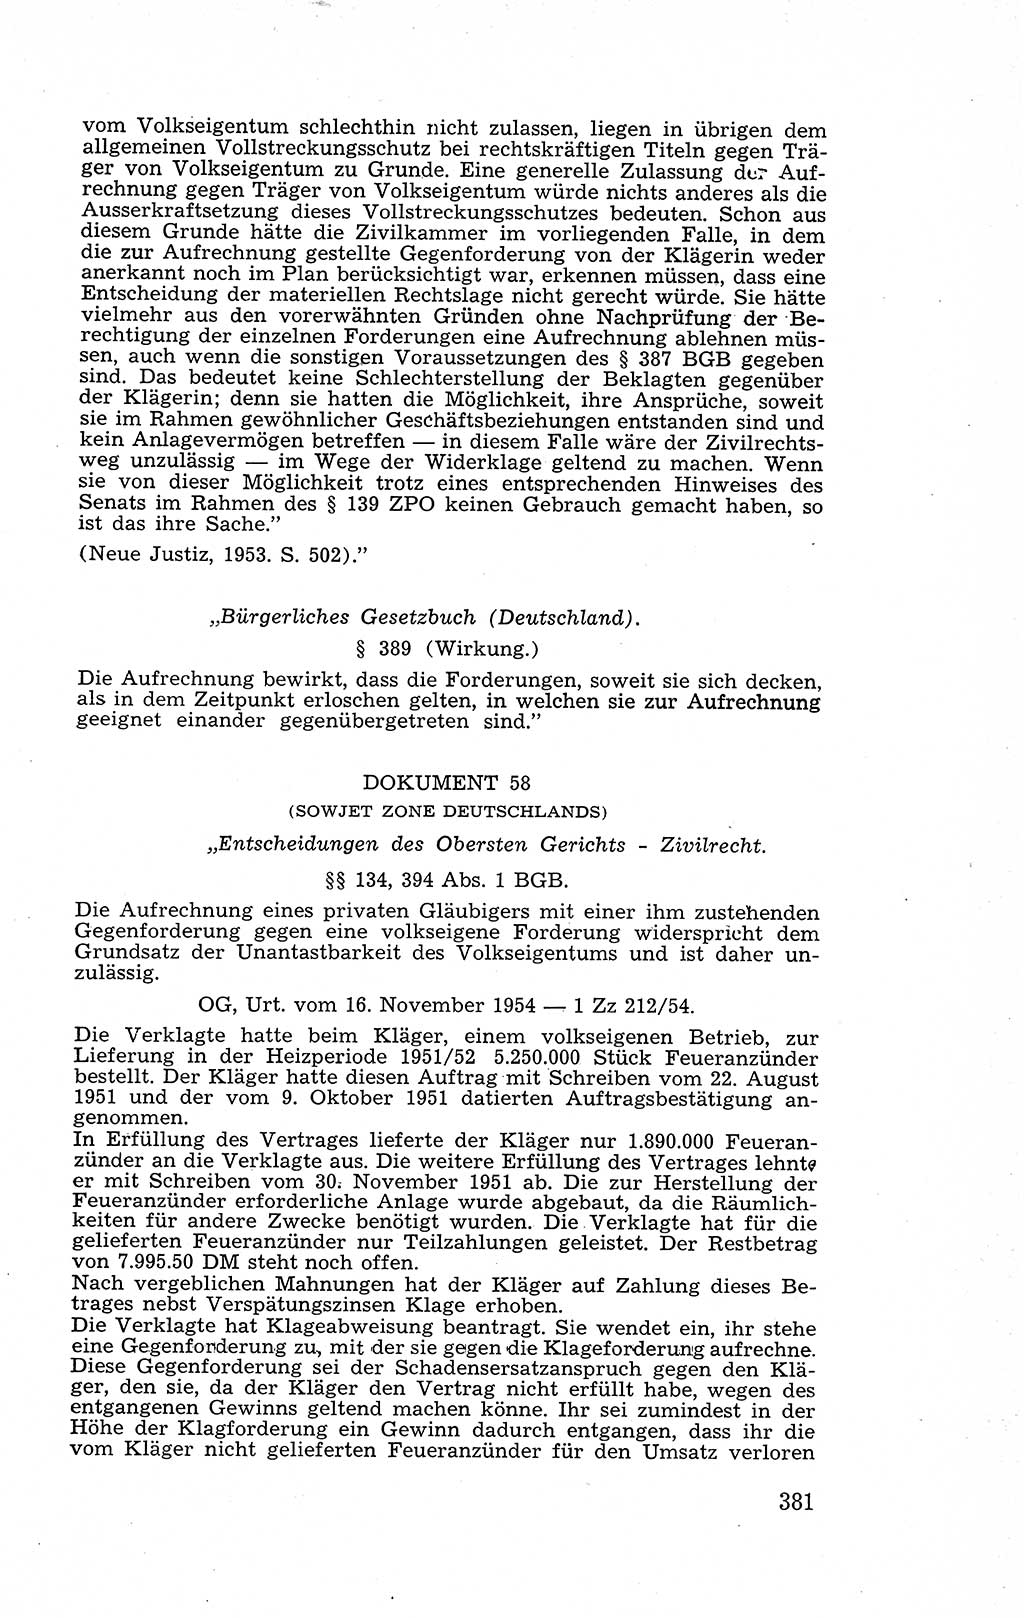 Recht in Fesseln, Dokumente, Internationale Juristen-Kommission [Bundesrepublik Deutschland (BRD)] 1955, Seite 381 (R. Dok. IJK BRD 1955, S. 381)